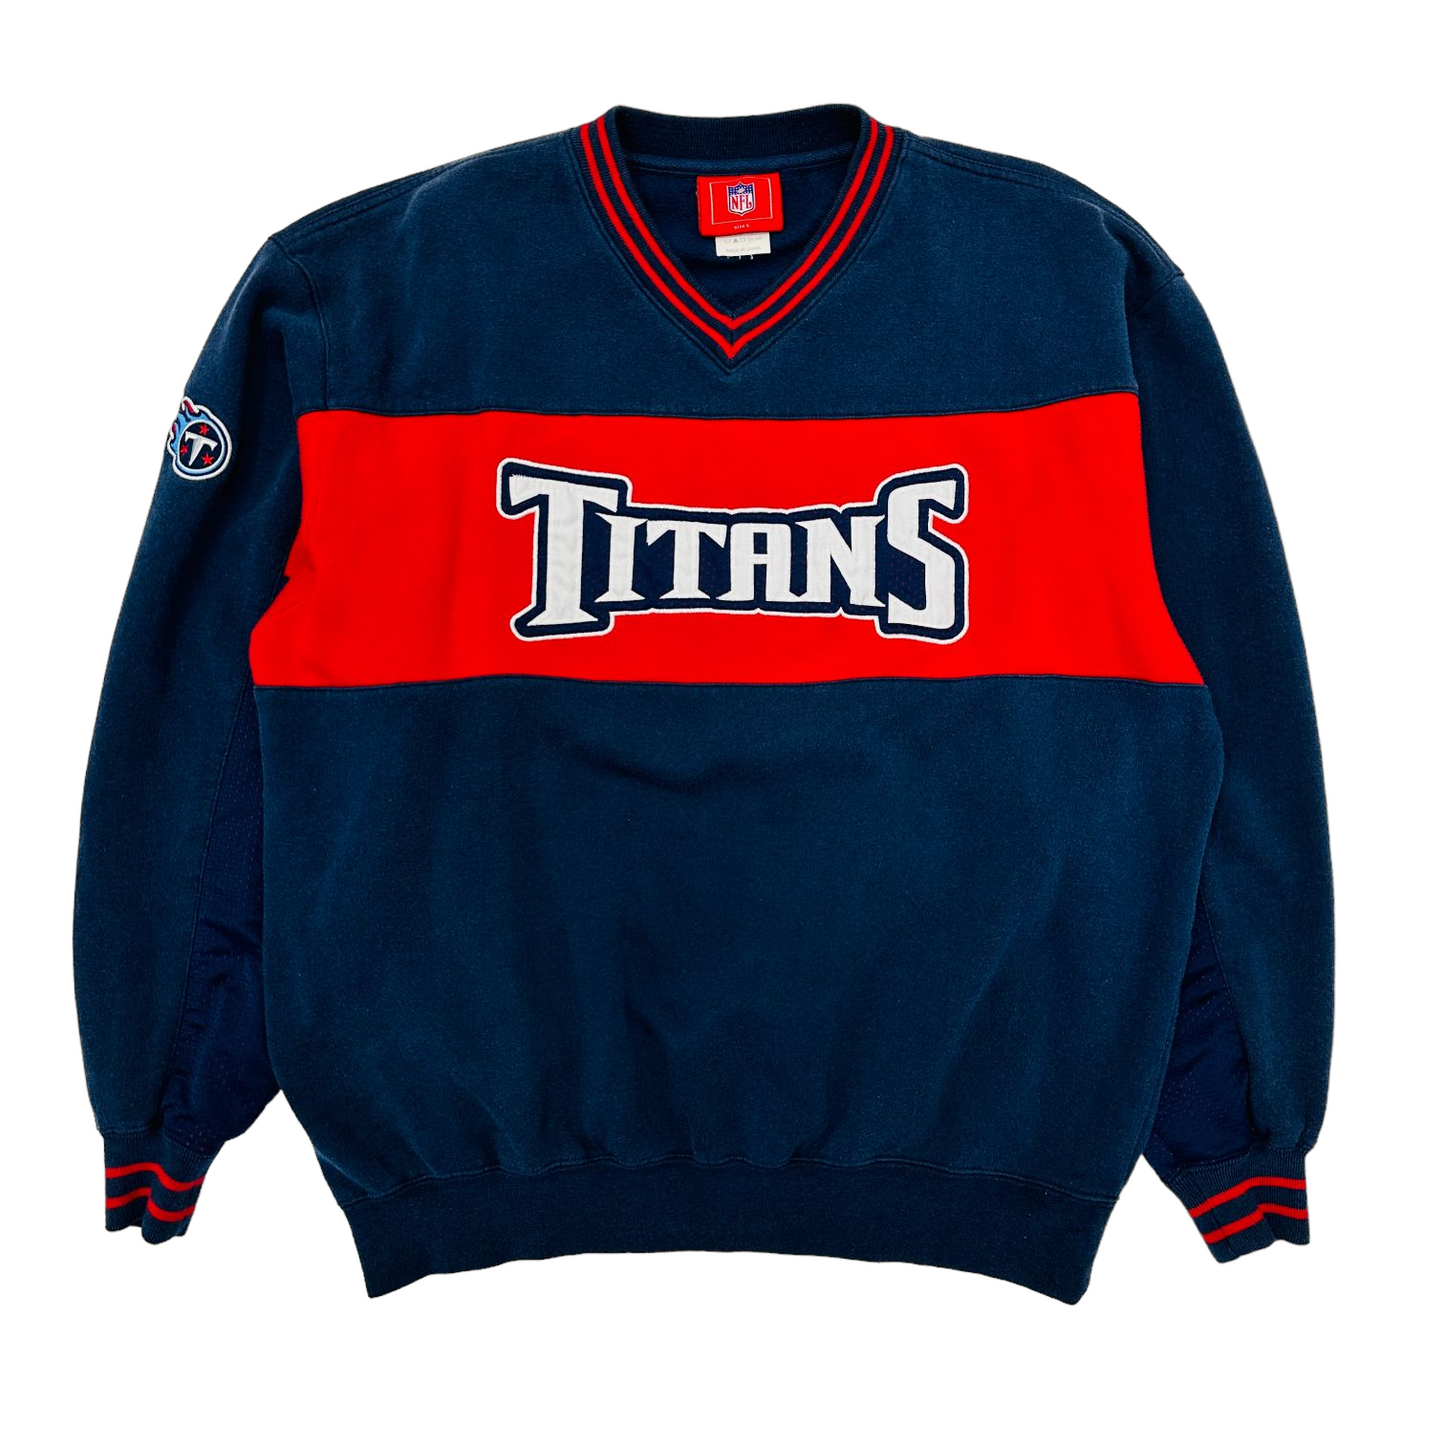 titans vintage sweatshirt